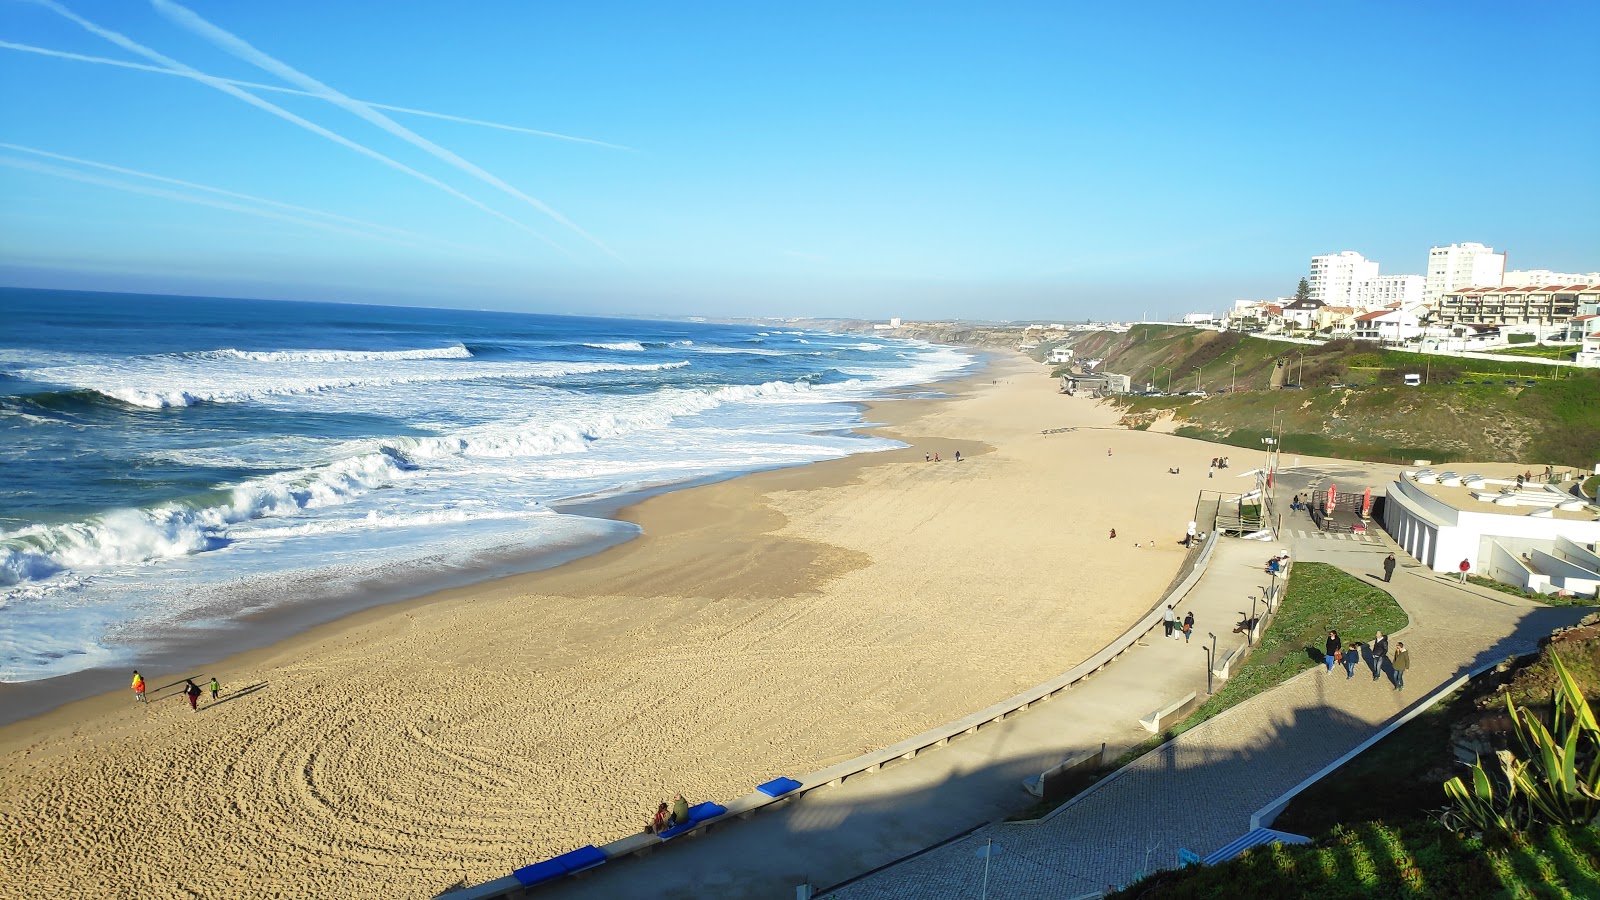 Foto af Praia de Santa Rita - populært sted blandt afslapningskendere